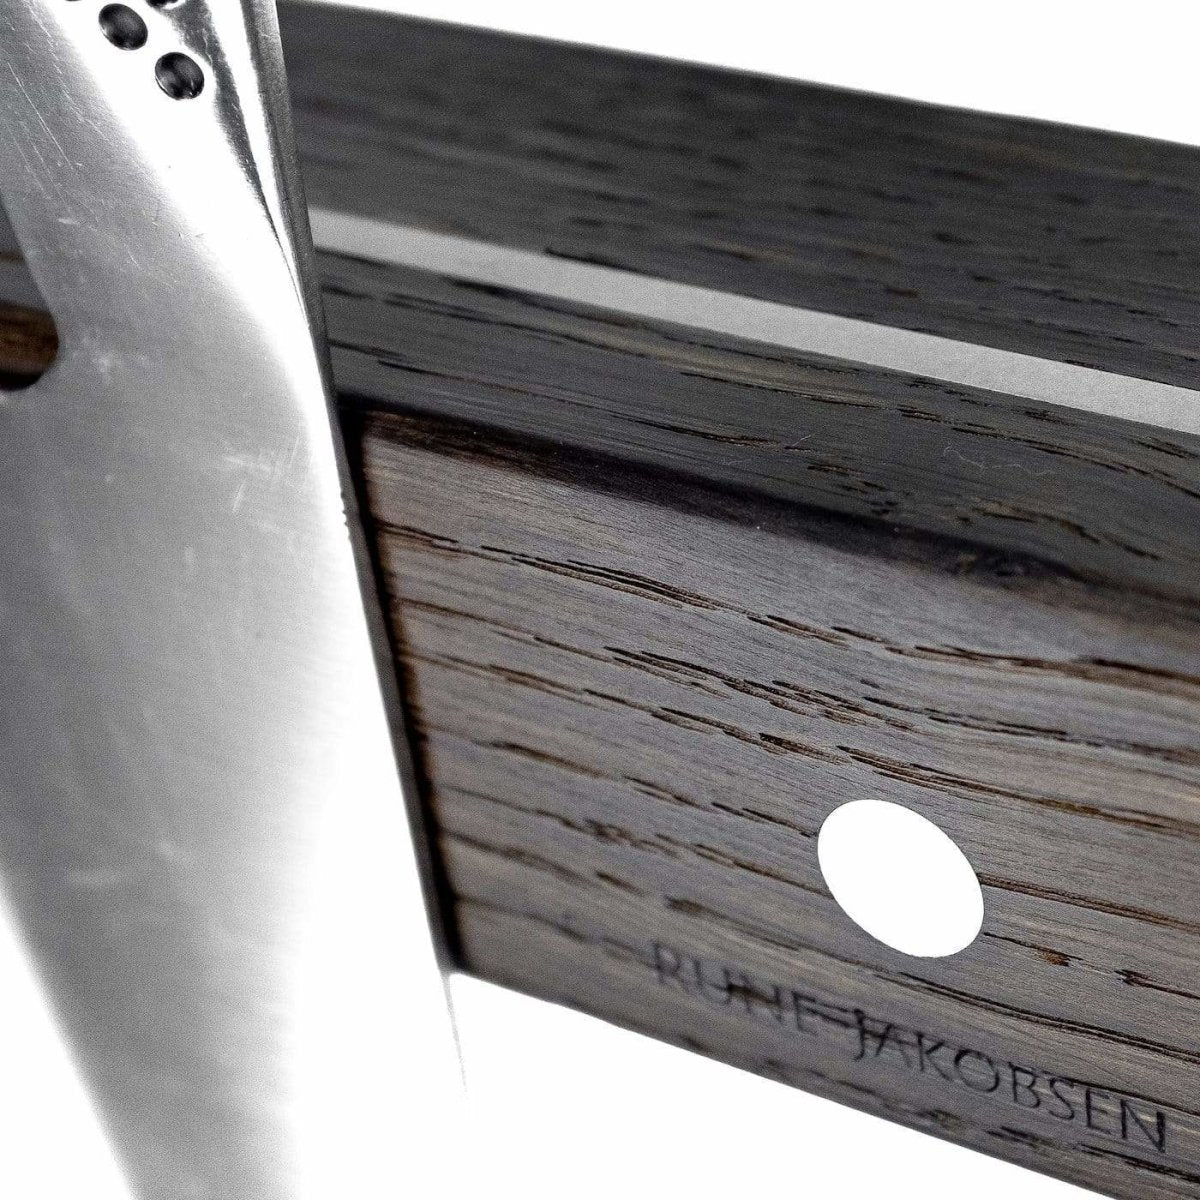 Rune-Jakobsen Woodworks 'Knifeboard Classic' dyb knivmagnet_11 by Rune-Jakobsen Design